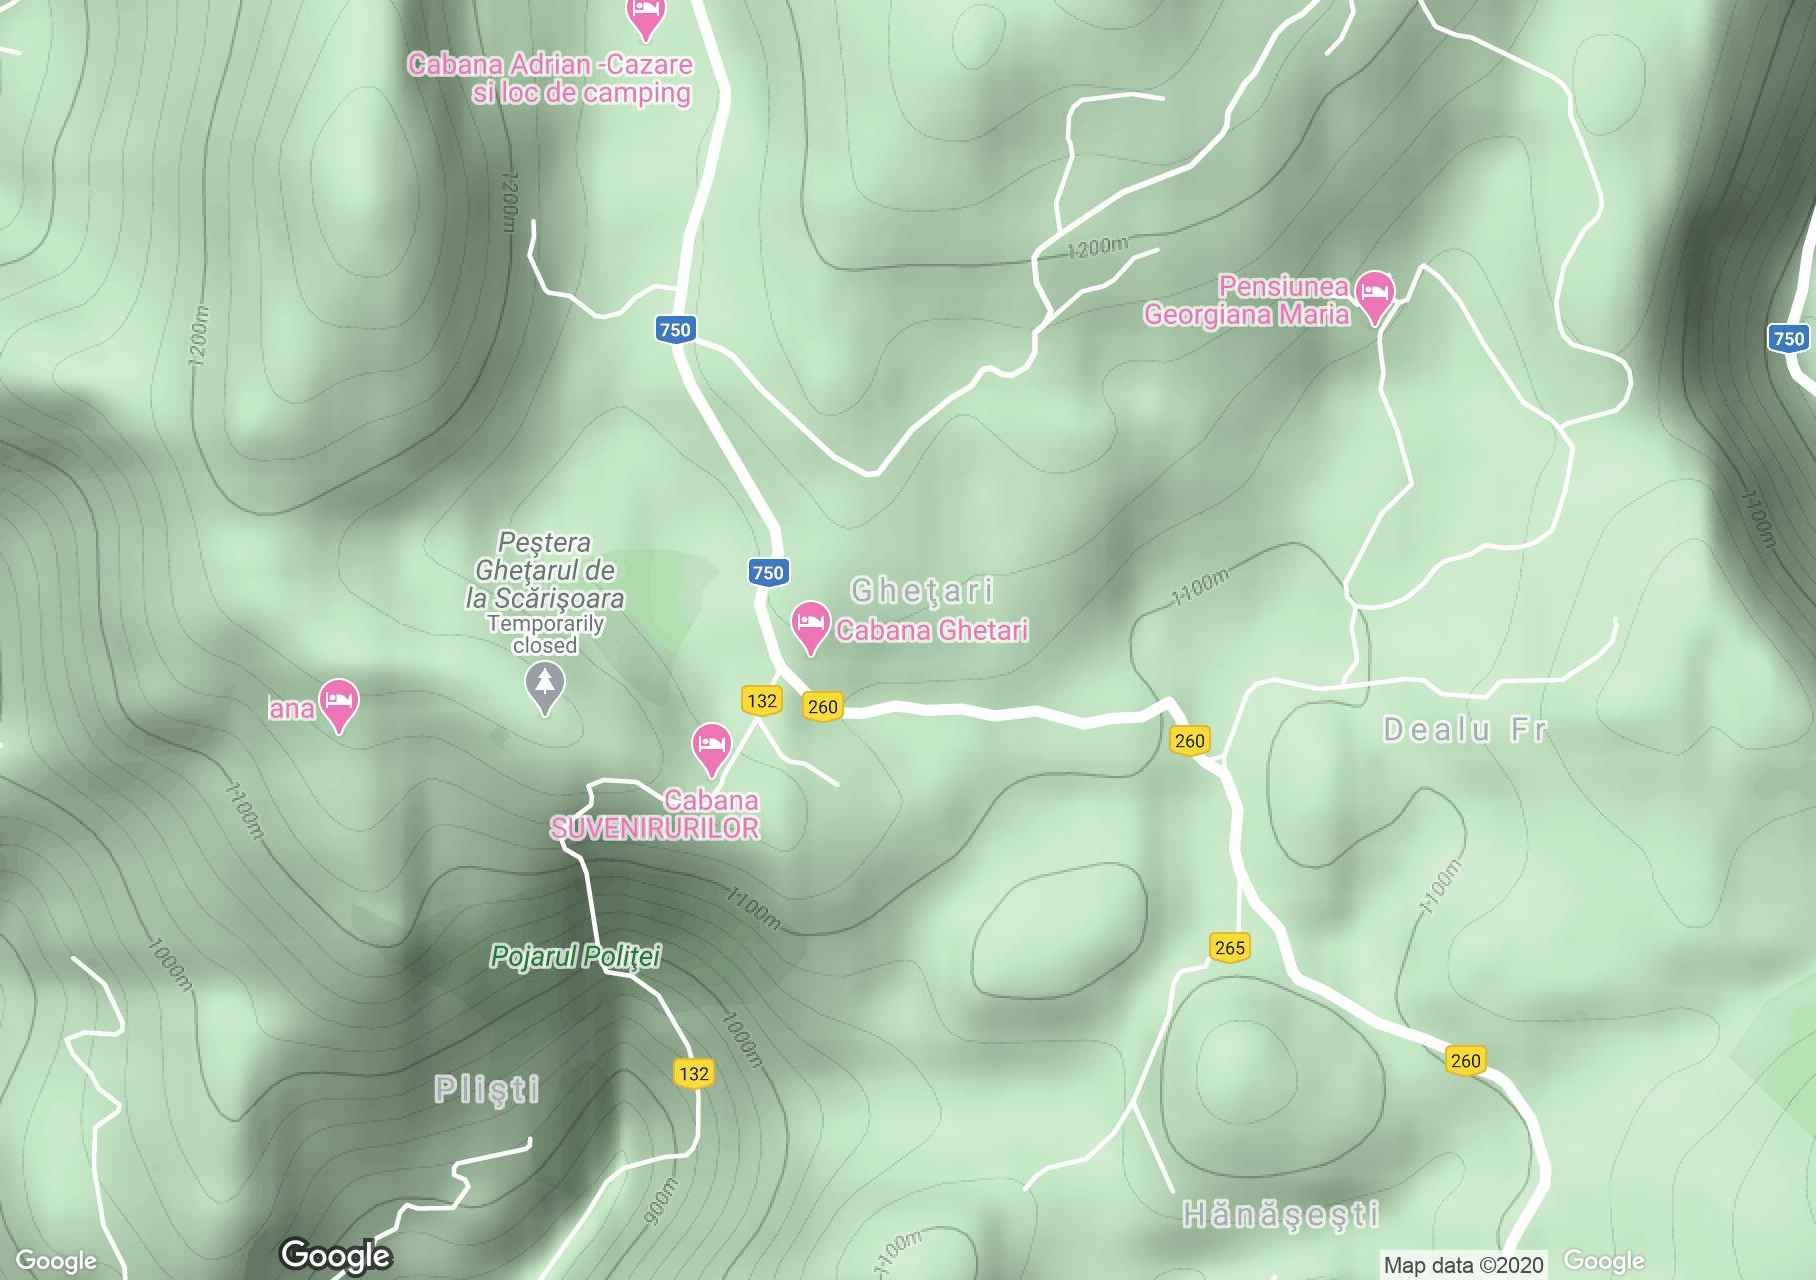 Gheţari (Szkerisóra) interaktív turista térképe.